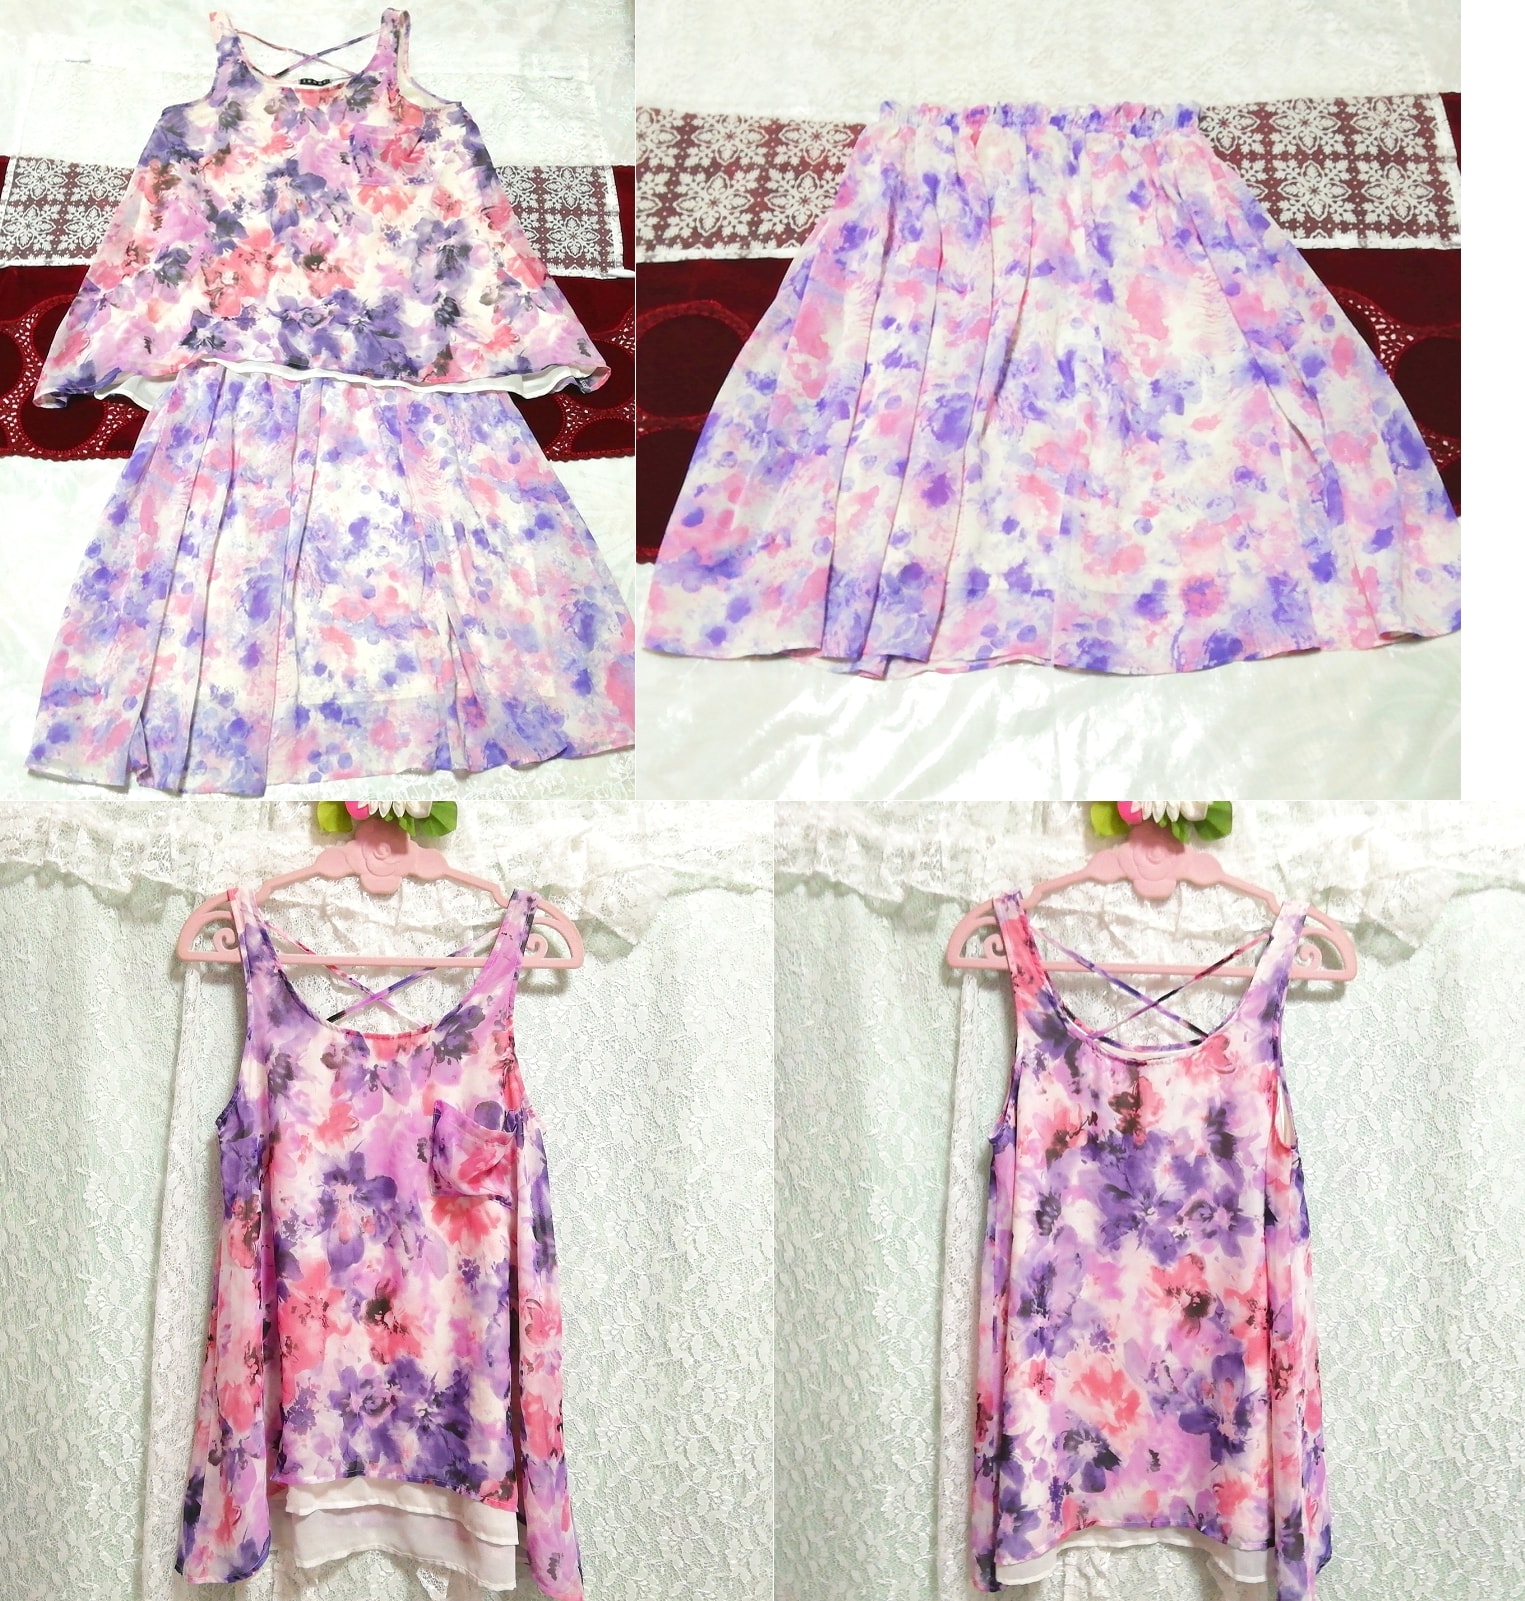 白色紫色粉色雪纺无袖束腰睡衣水彩图案喇叭裙 2P, 时尚, 女士时装, 睡衣